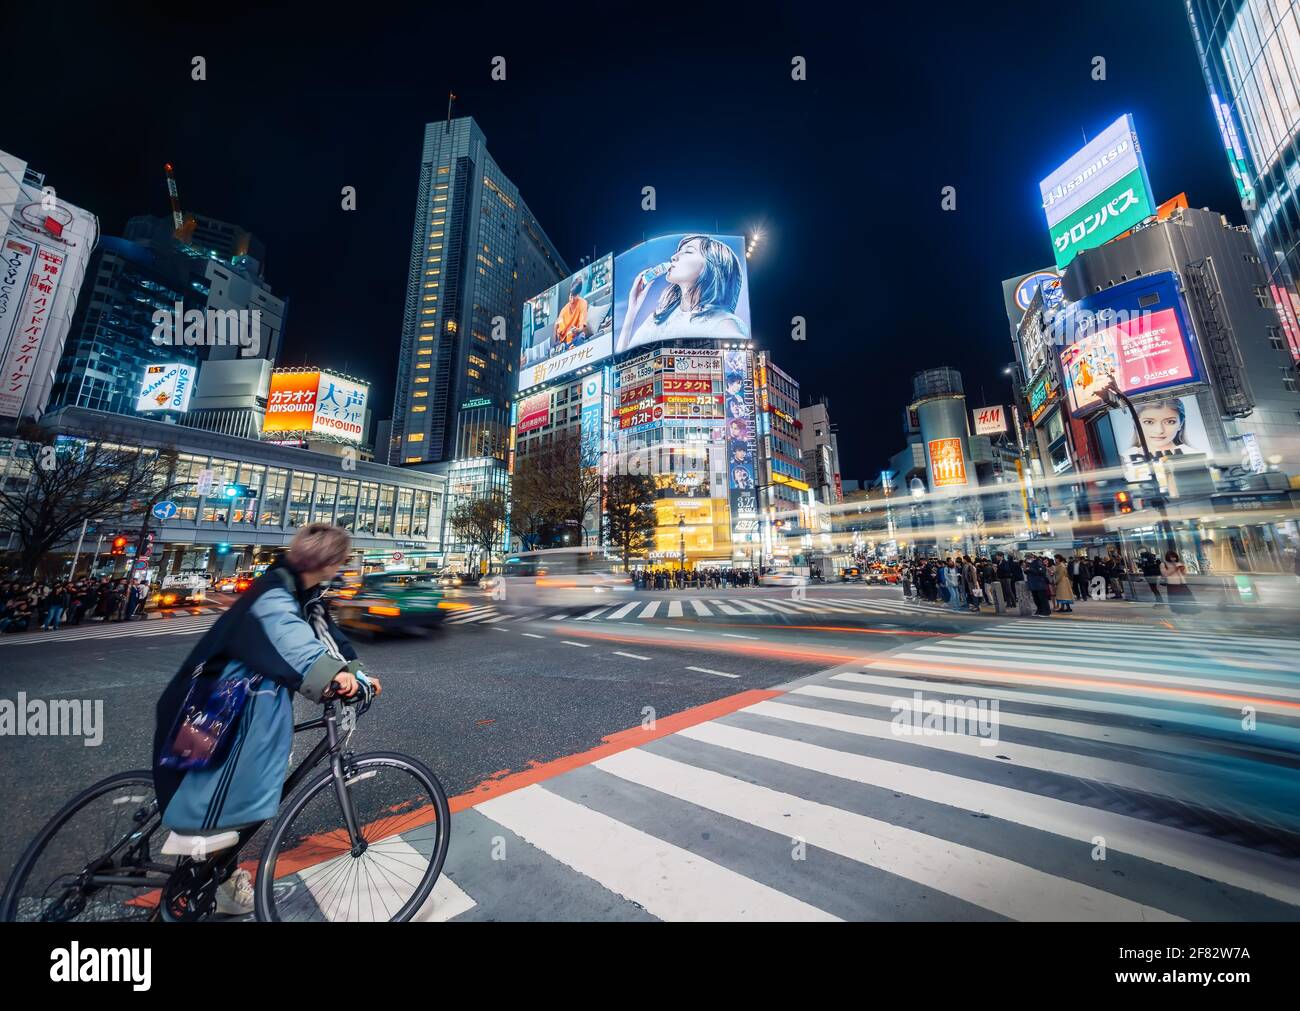 Tokio - 27. März 2019 - elektrisierende Shibuya-Kreuzung bei Nacht mit Neonschildern und Nachtleben und bewegter Verkehr, Tokio, Japan Stockfoto